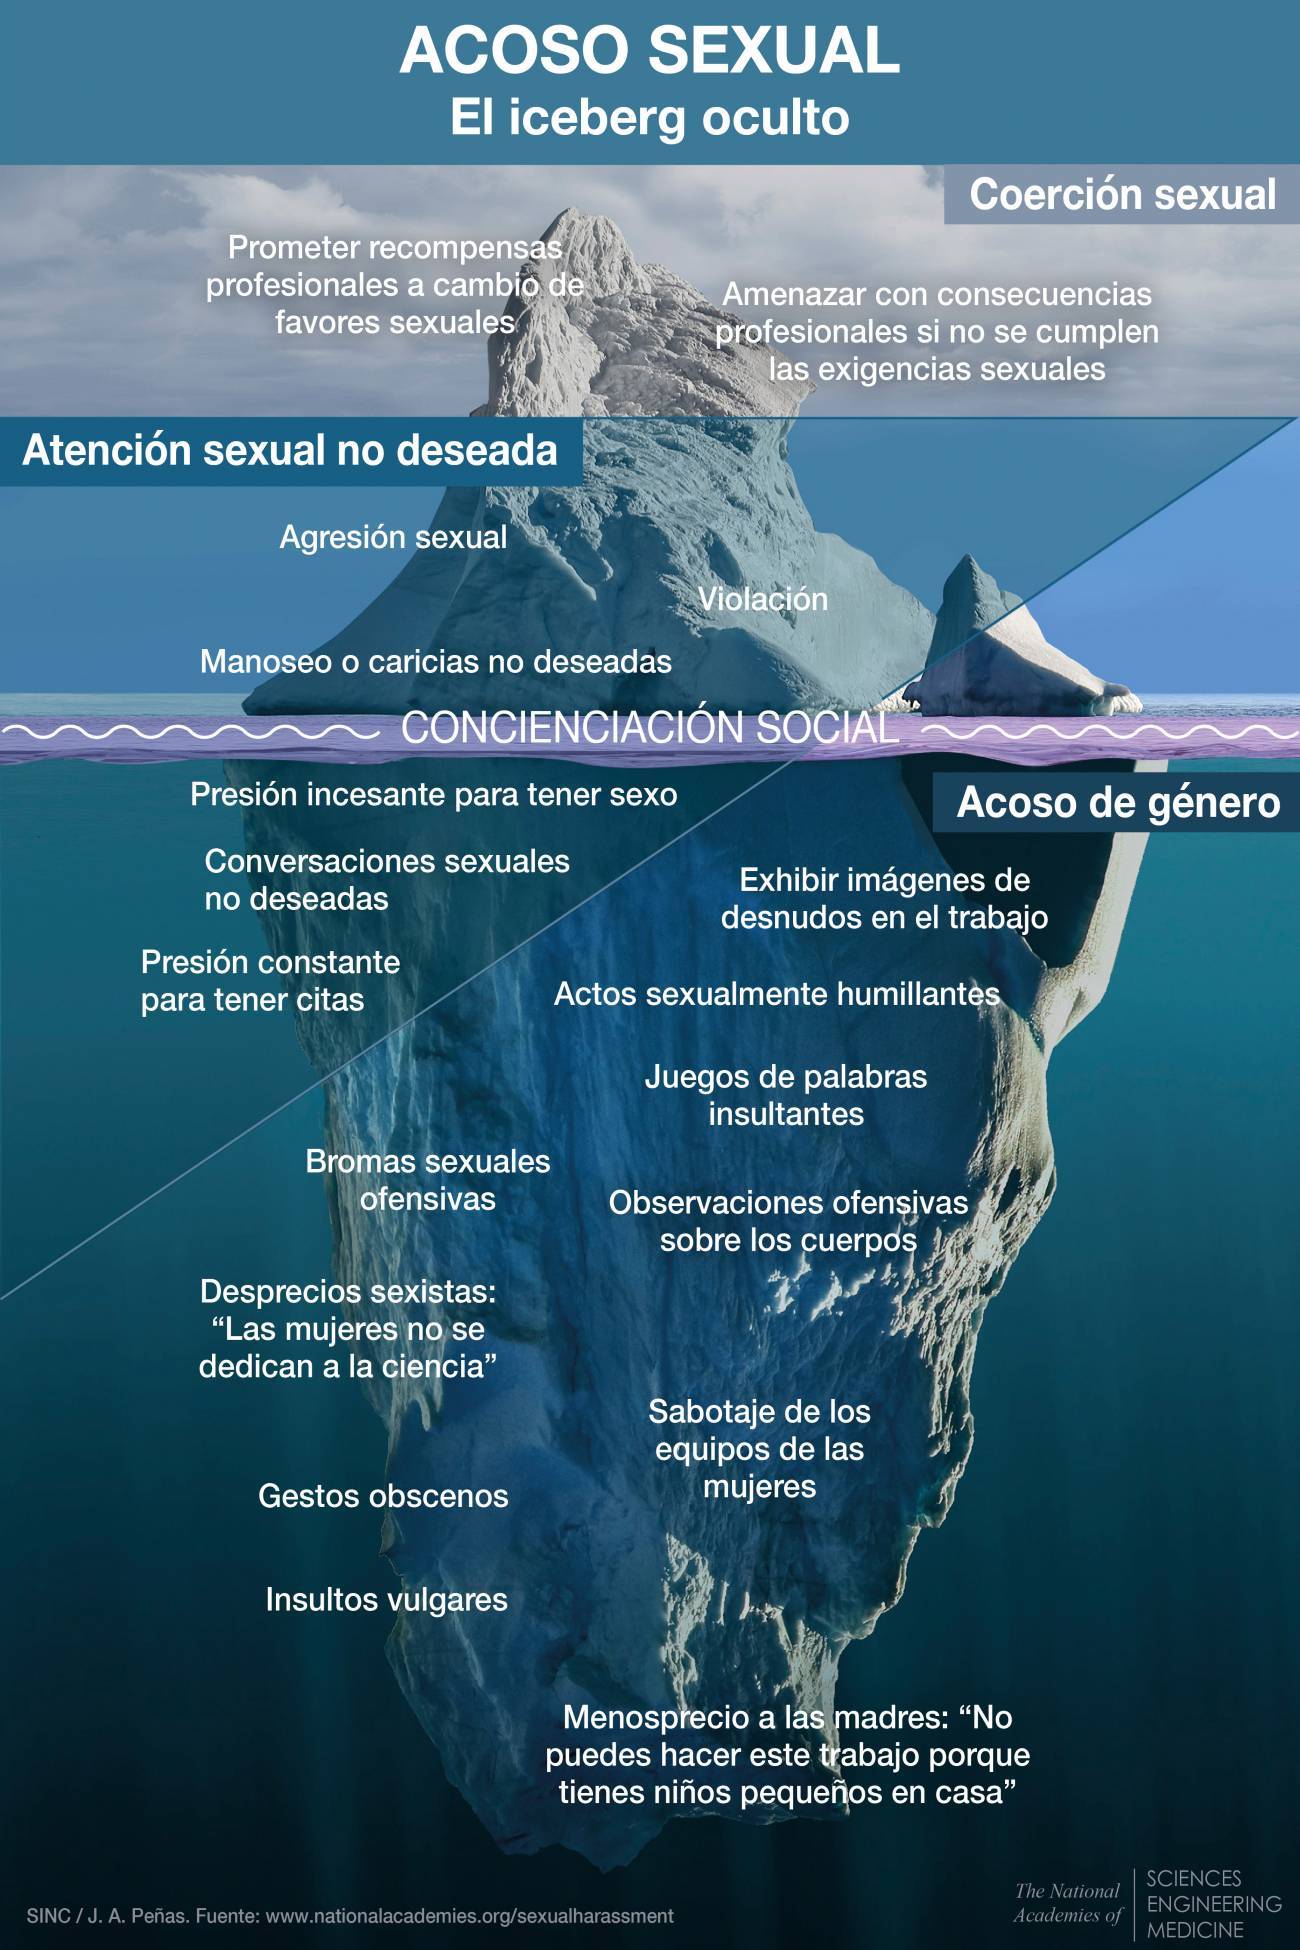 Acoso sexual el iceberg oculto - Angela Bernardo : El acoso sexual es un abuso de poder y la ciencia es un sistema muy vertical donde  pocas personas tienen mucho poder